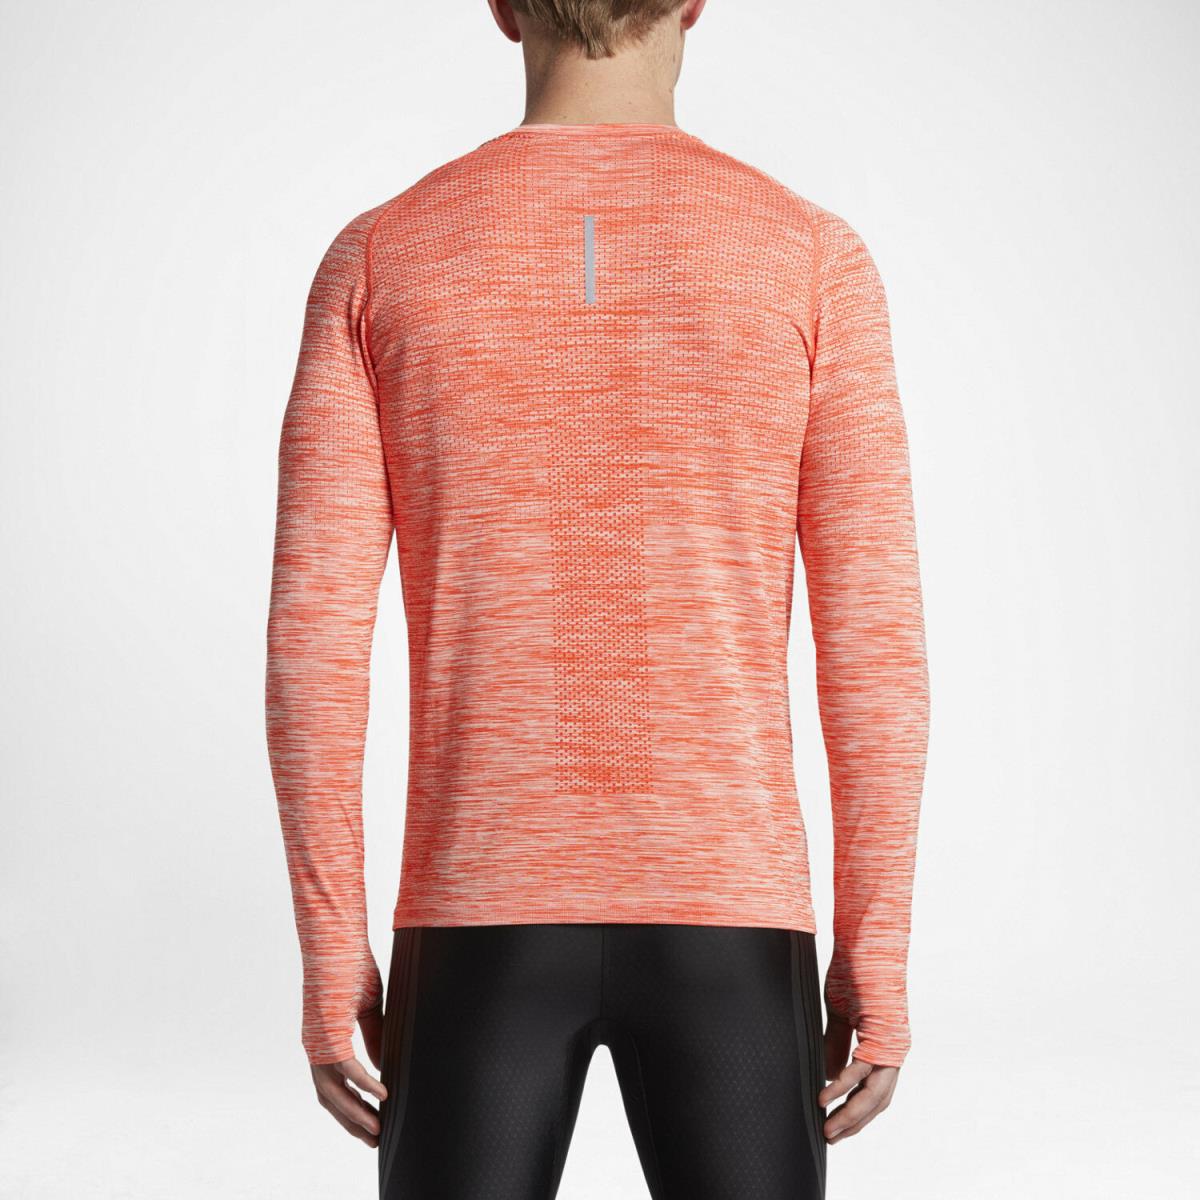 Nike clothing DRI - Orange 2